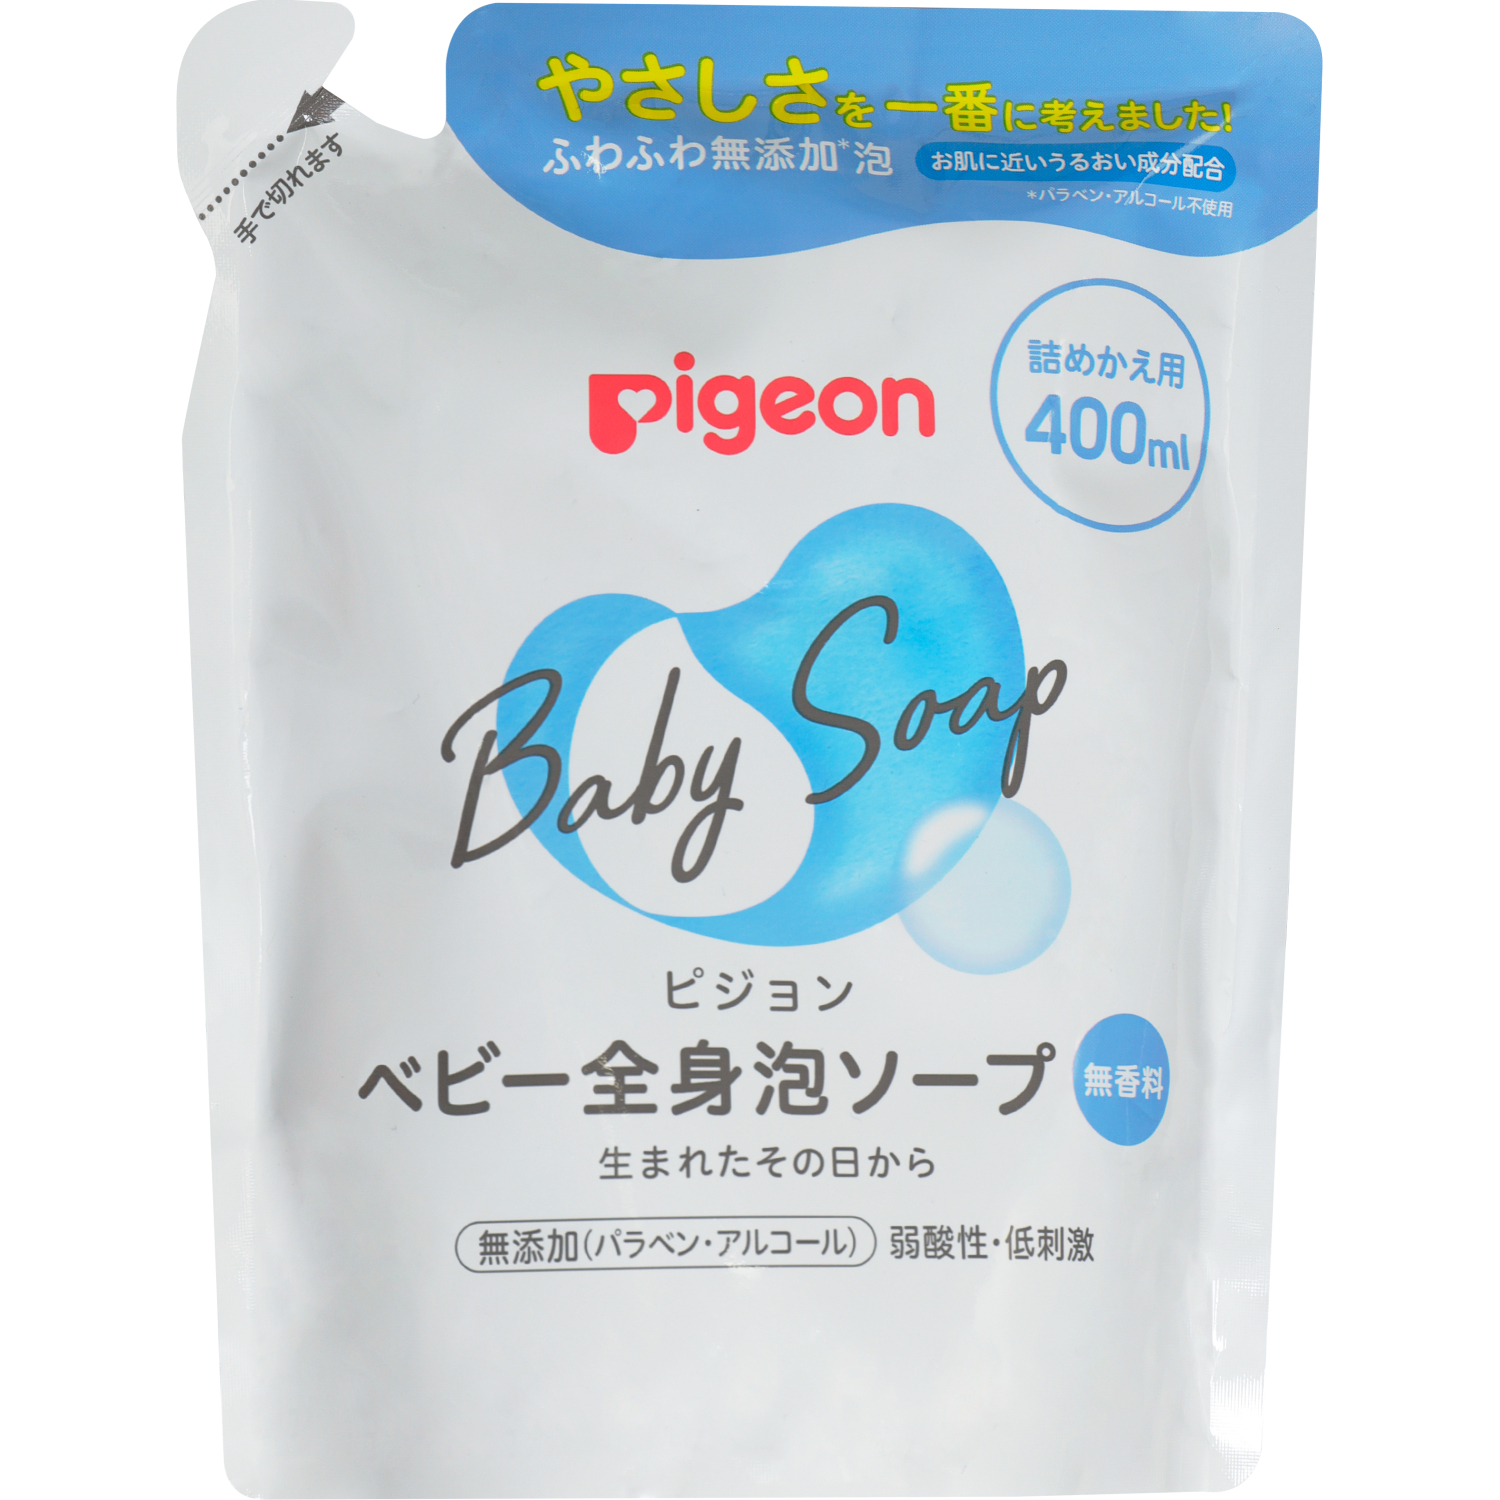 Мыло-пенка Pigeon для младенцев сменный блок 400 мл мыло пенка для младенцев pigeon с рождения сменный блок 400мл